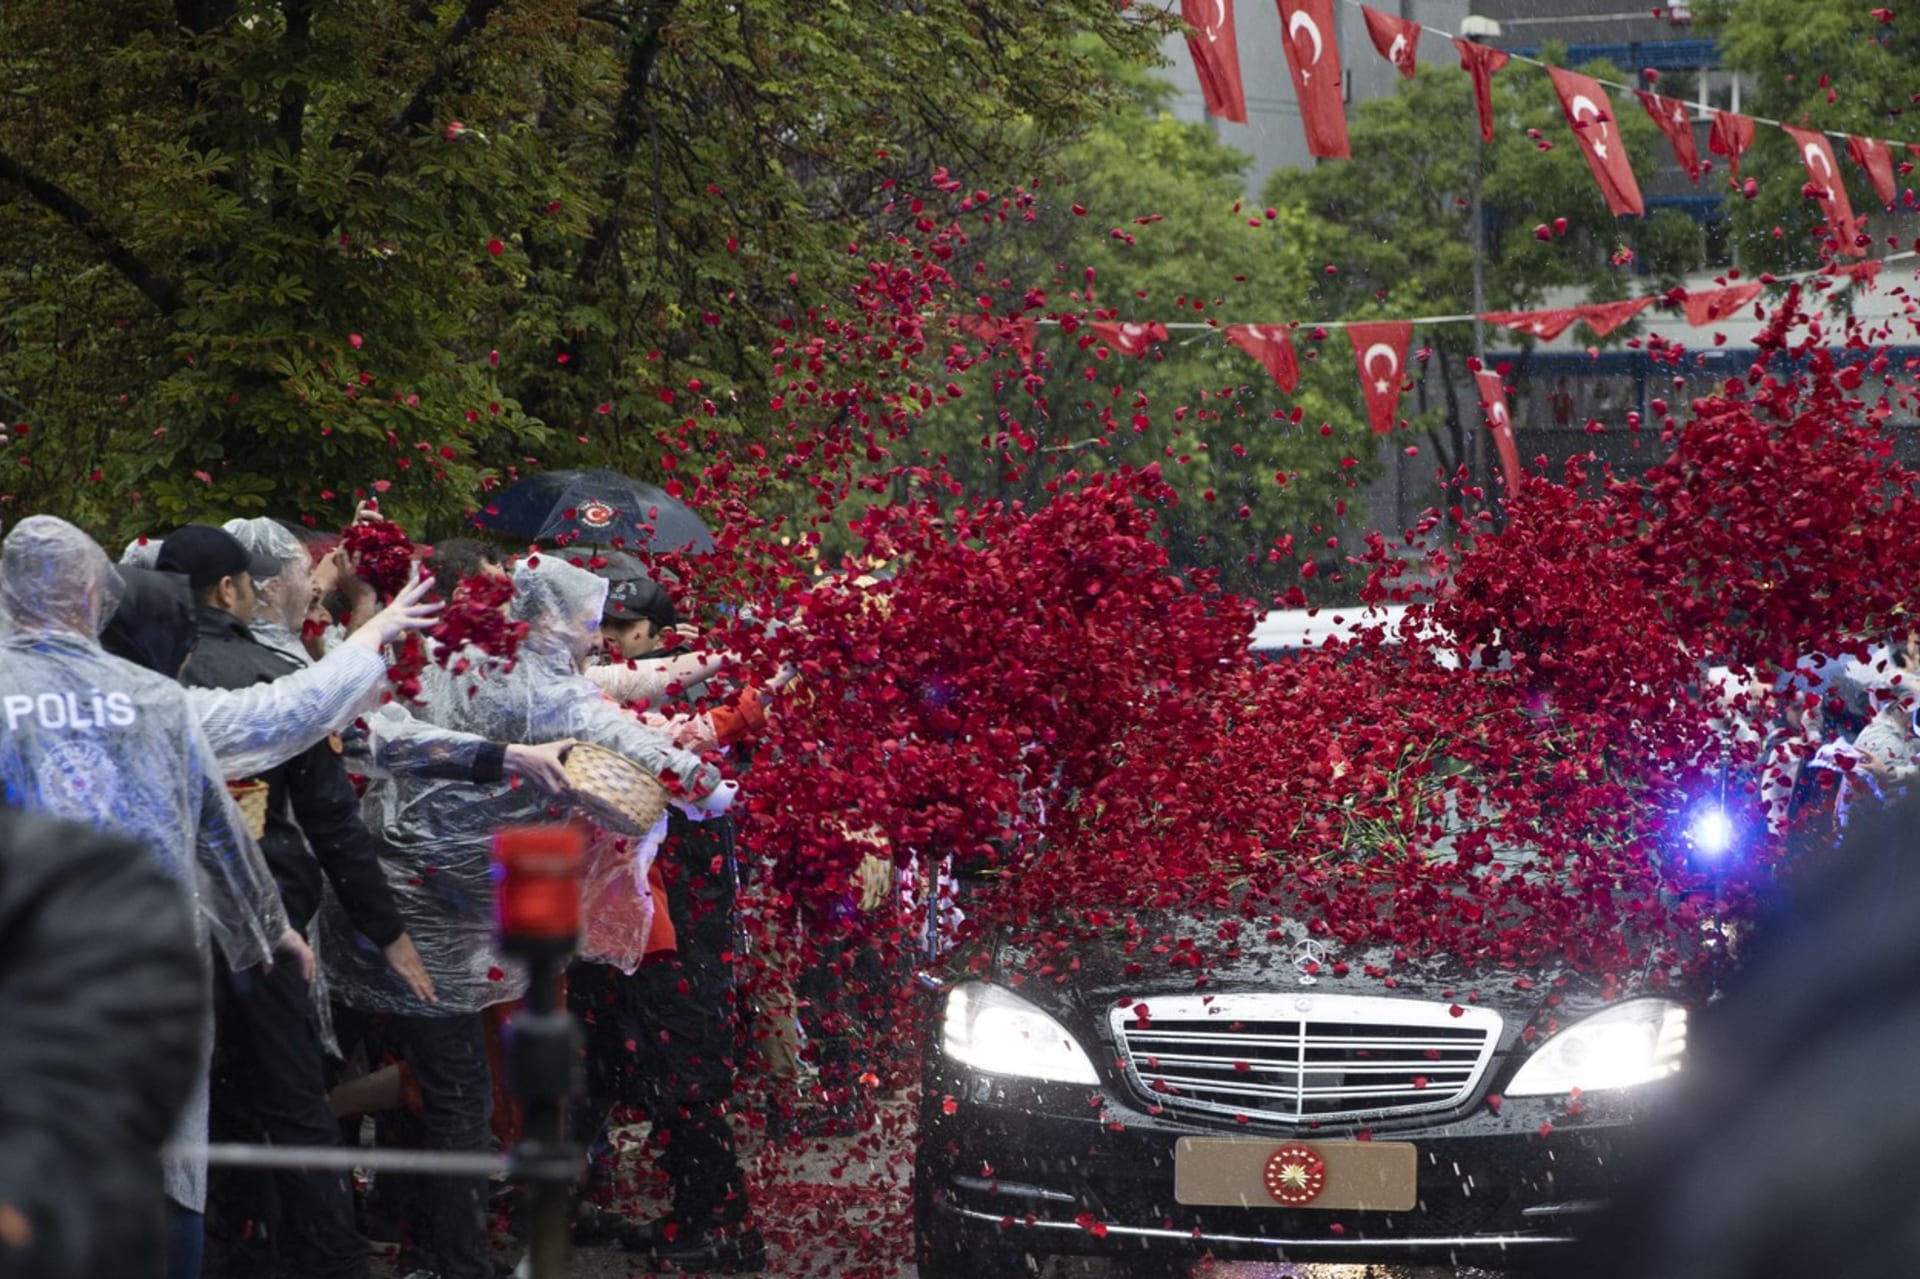 Lidé před parlamentem Erdogana vítali okvětními lístky růži, které mu házeli na auto.